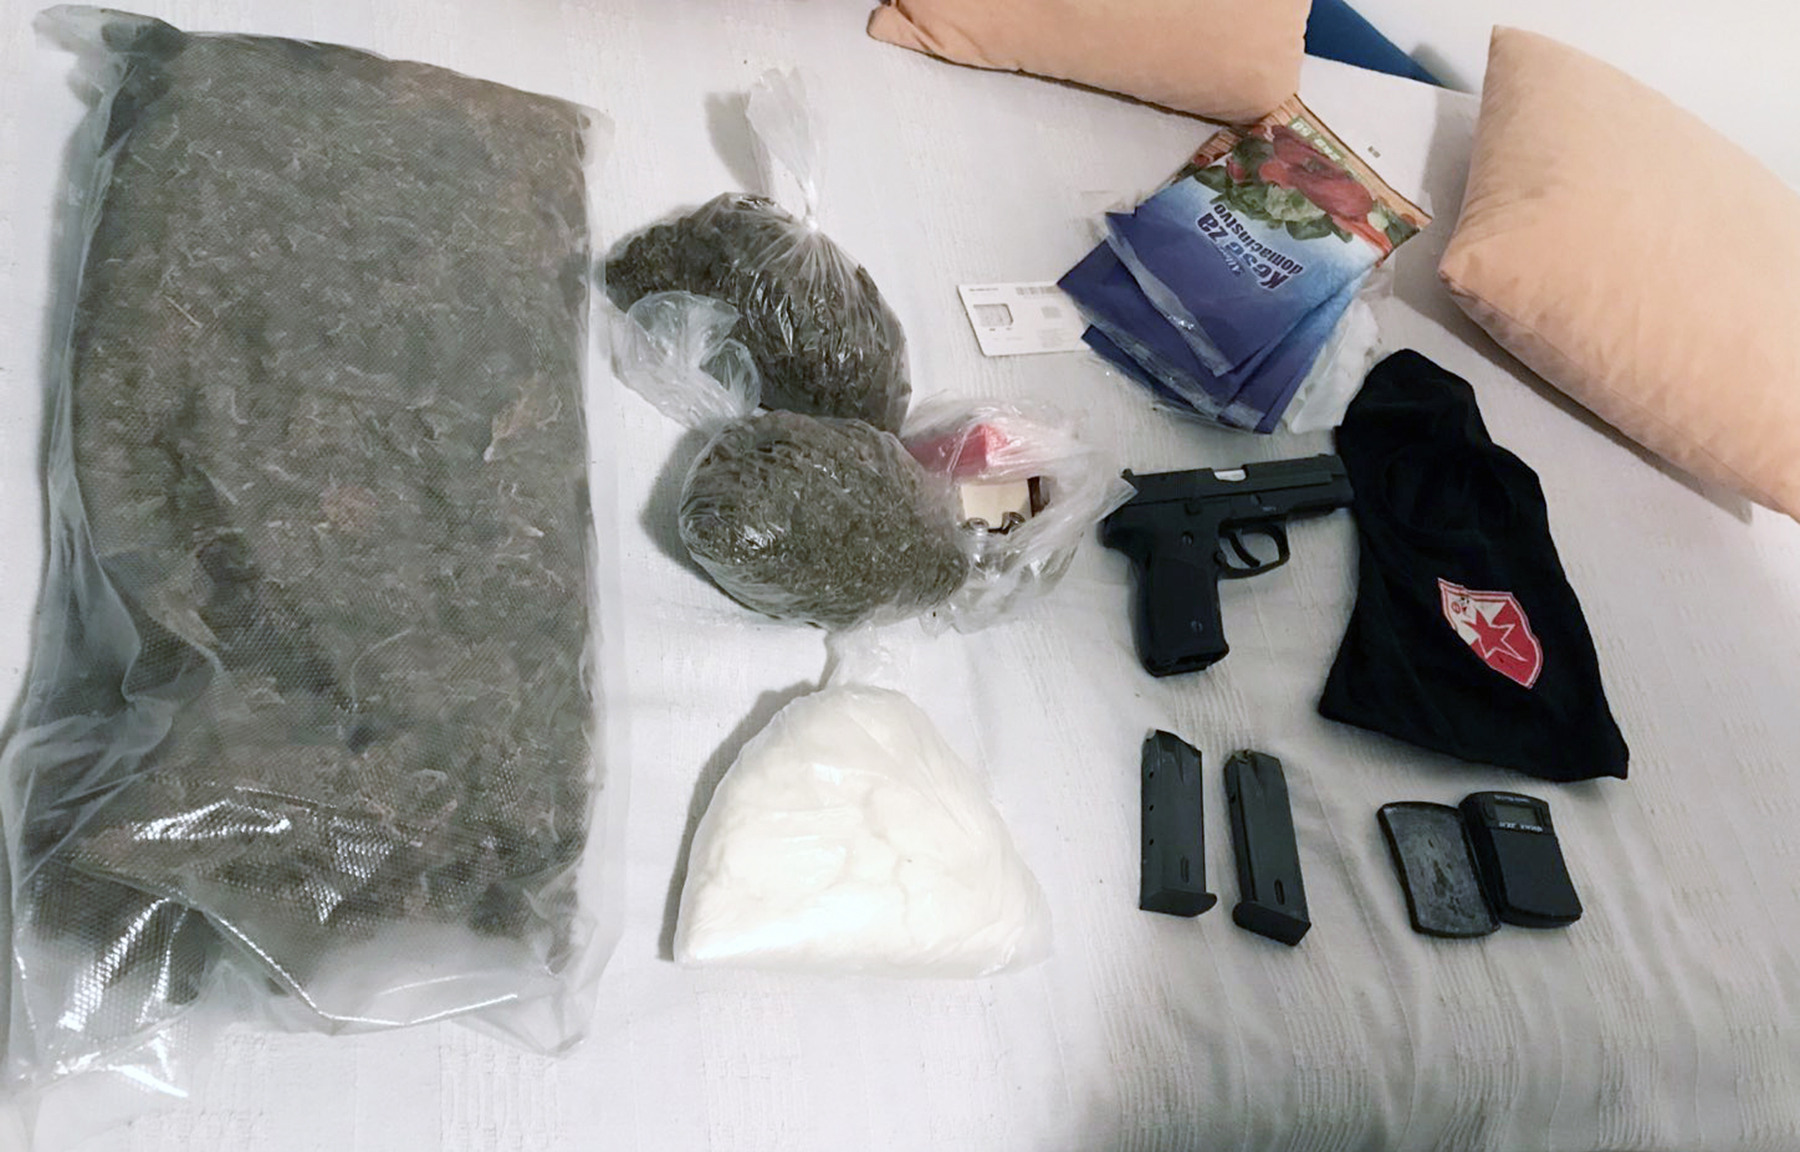 Kod osumnjičenog pronađeno 1,2 kilograma marihuane i kilogram amfetamina, pištolj i municija